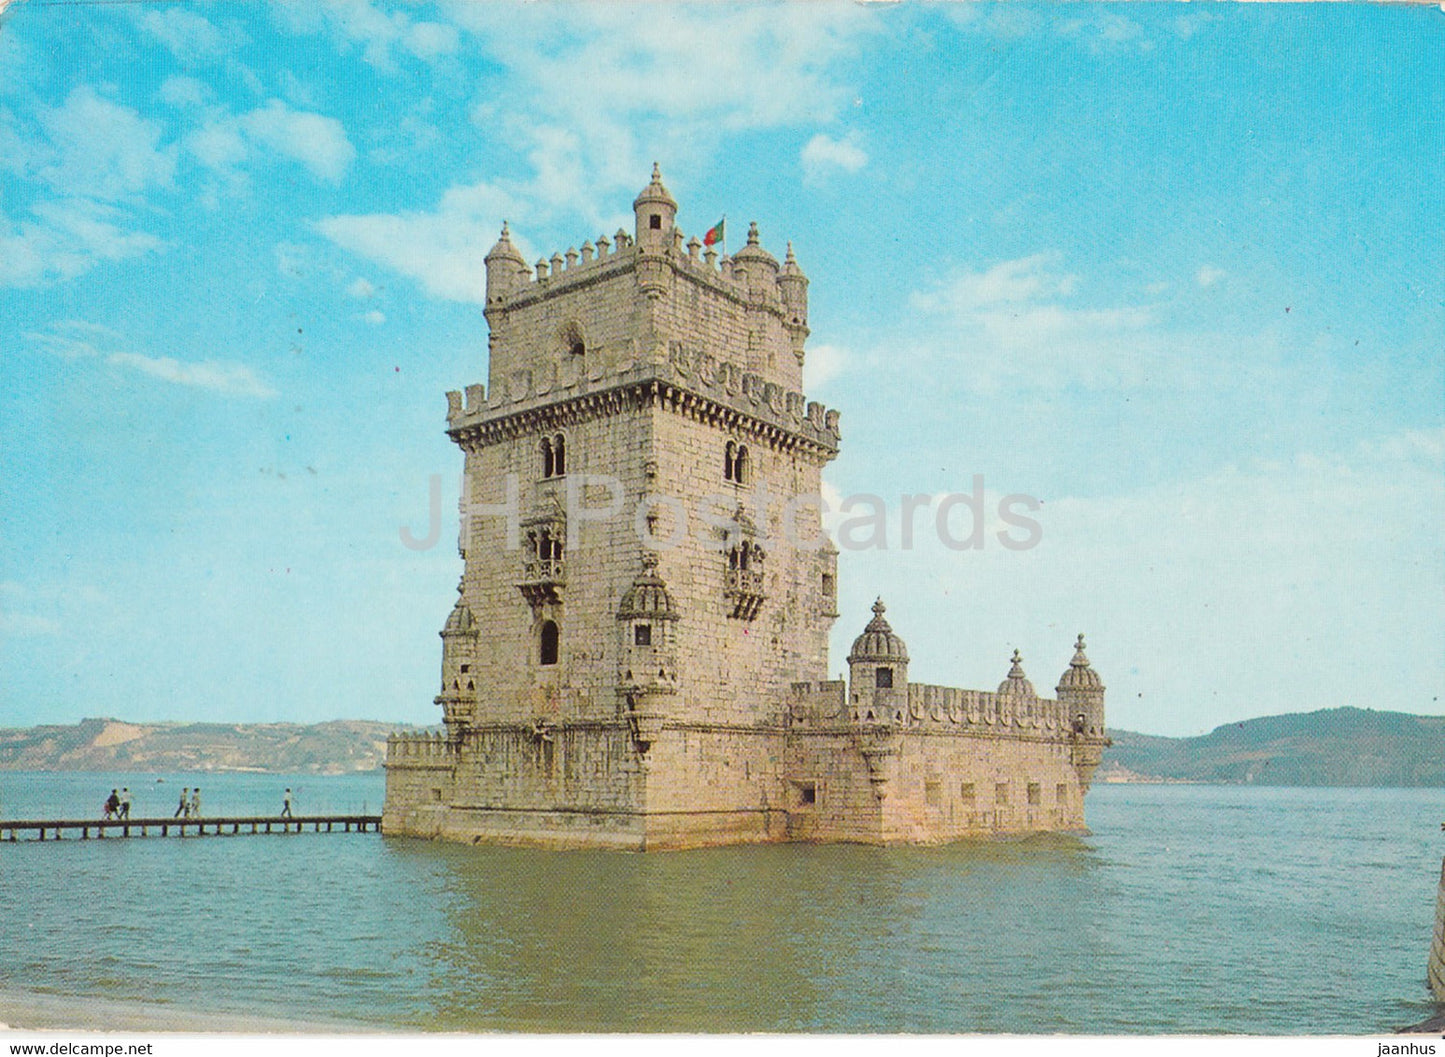 Lisbon - Lisboa - Torre de Belem - Tower of Belem - 312 - 1977 - Portugal - used - JH Postcards